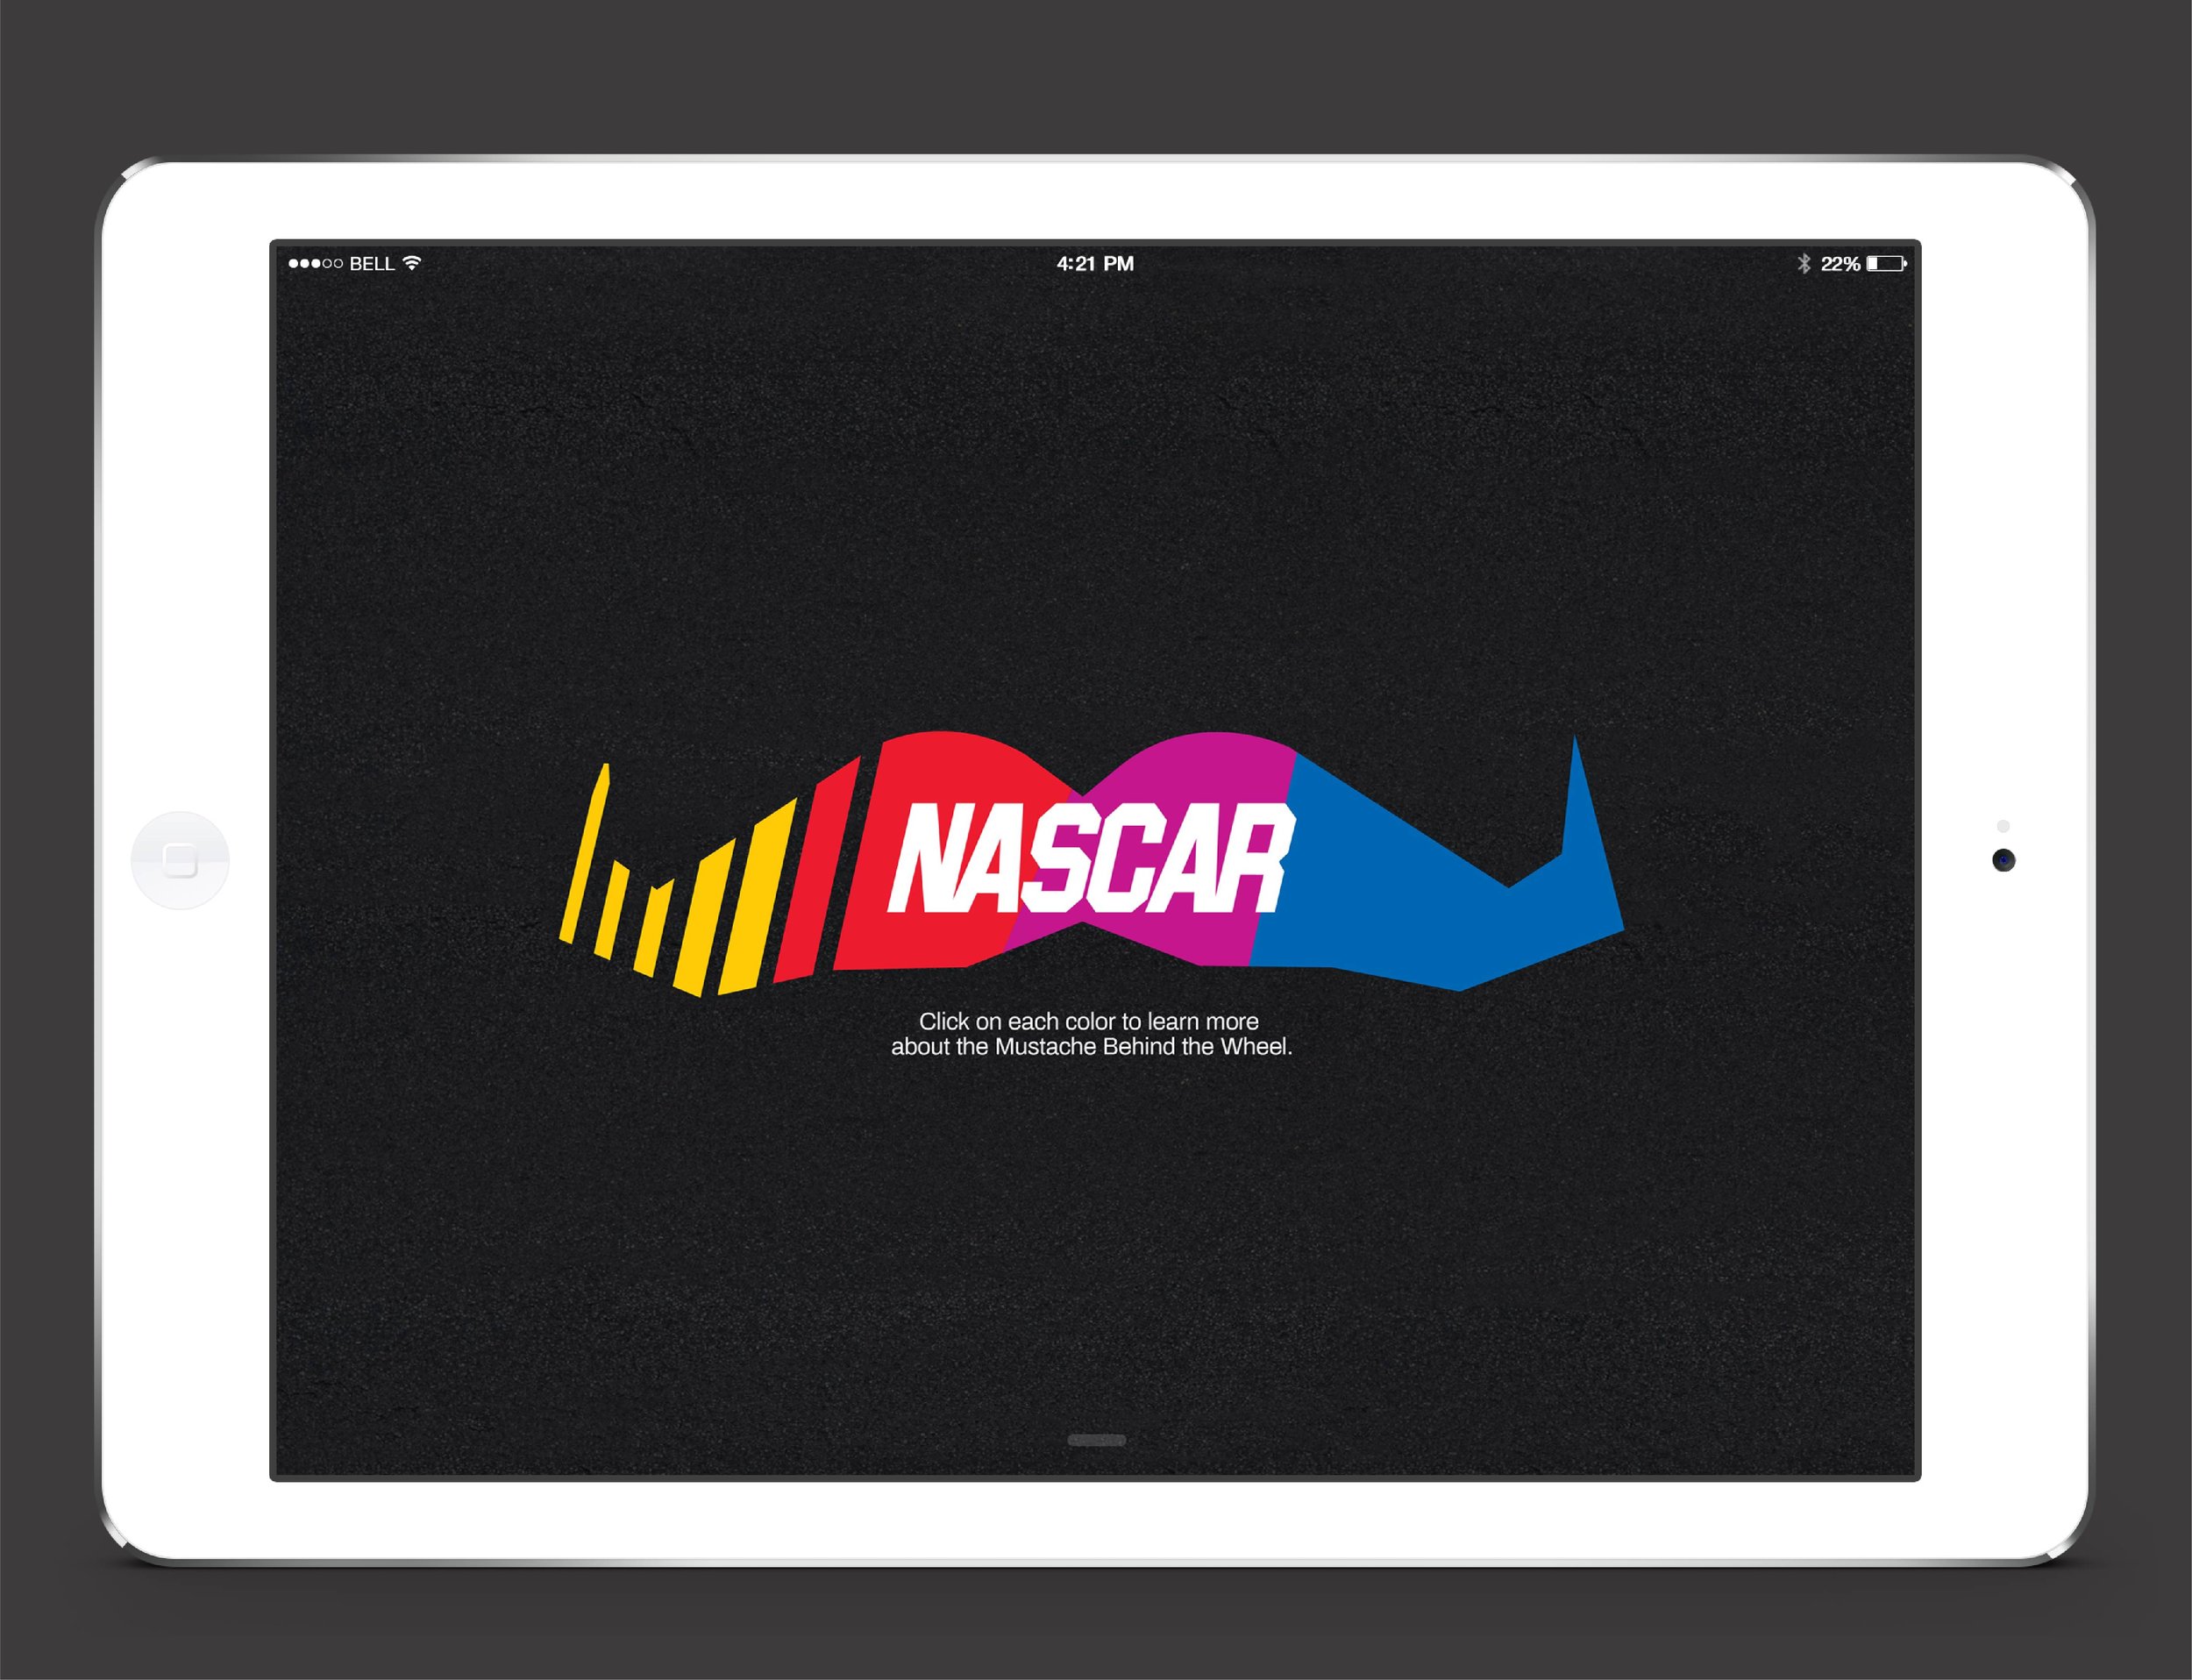 NASCAR_microsite_mockup 1.jpg